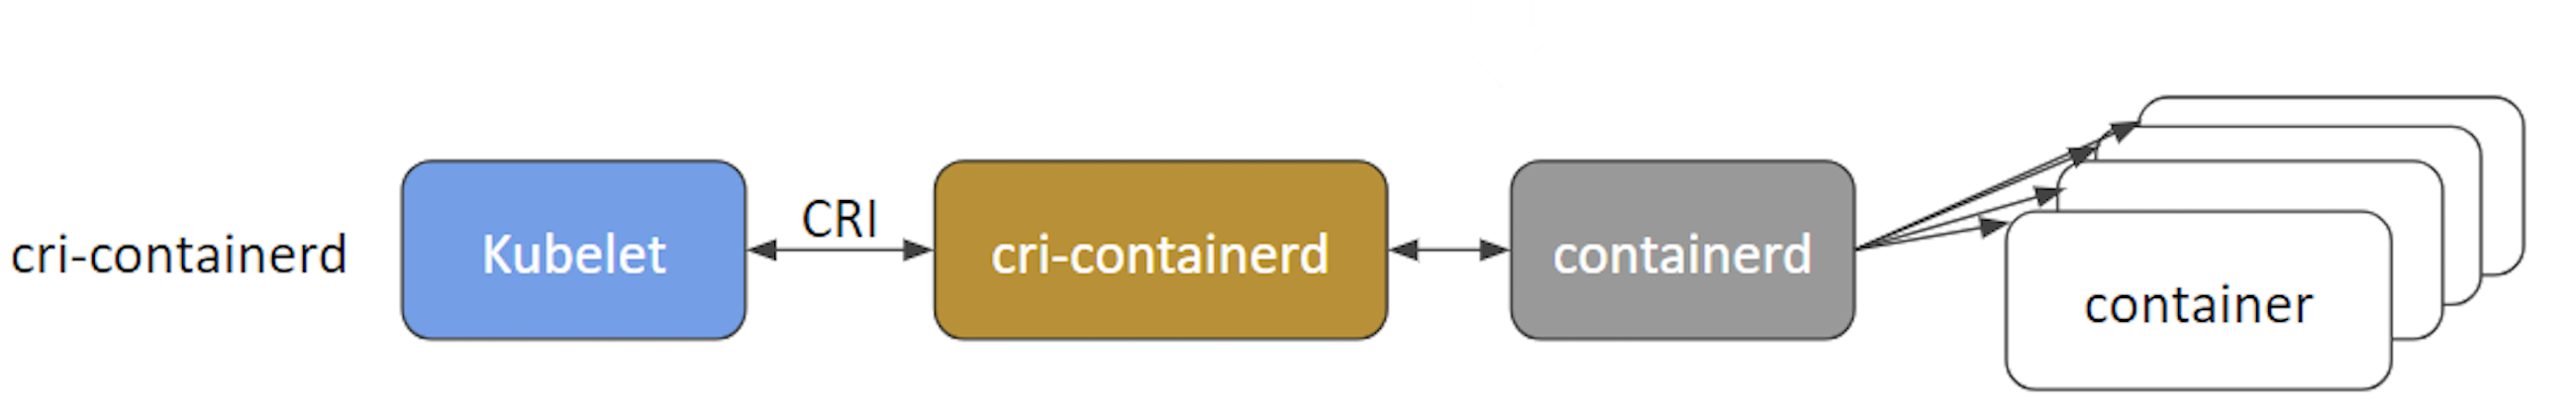 cri-container